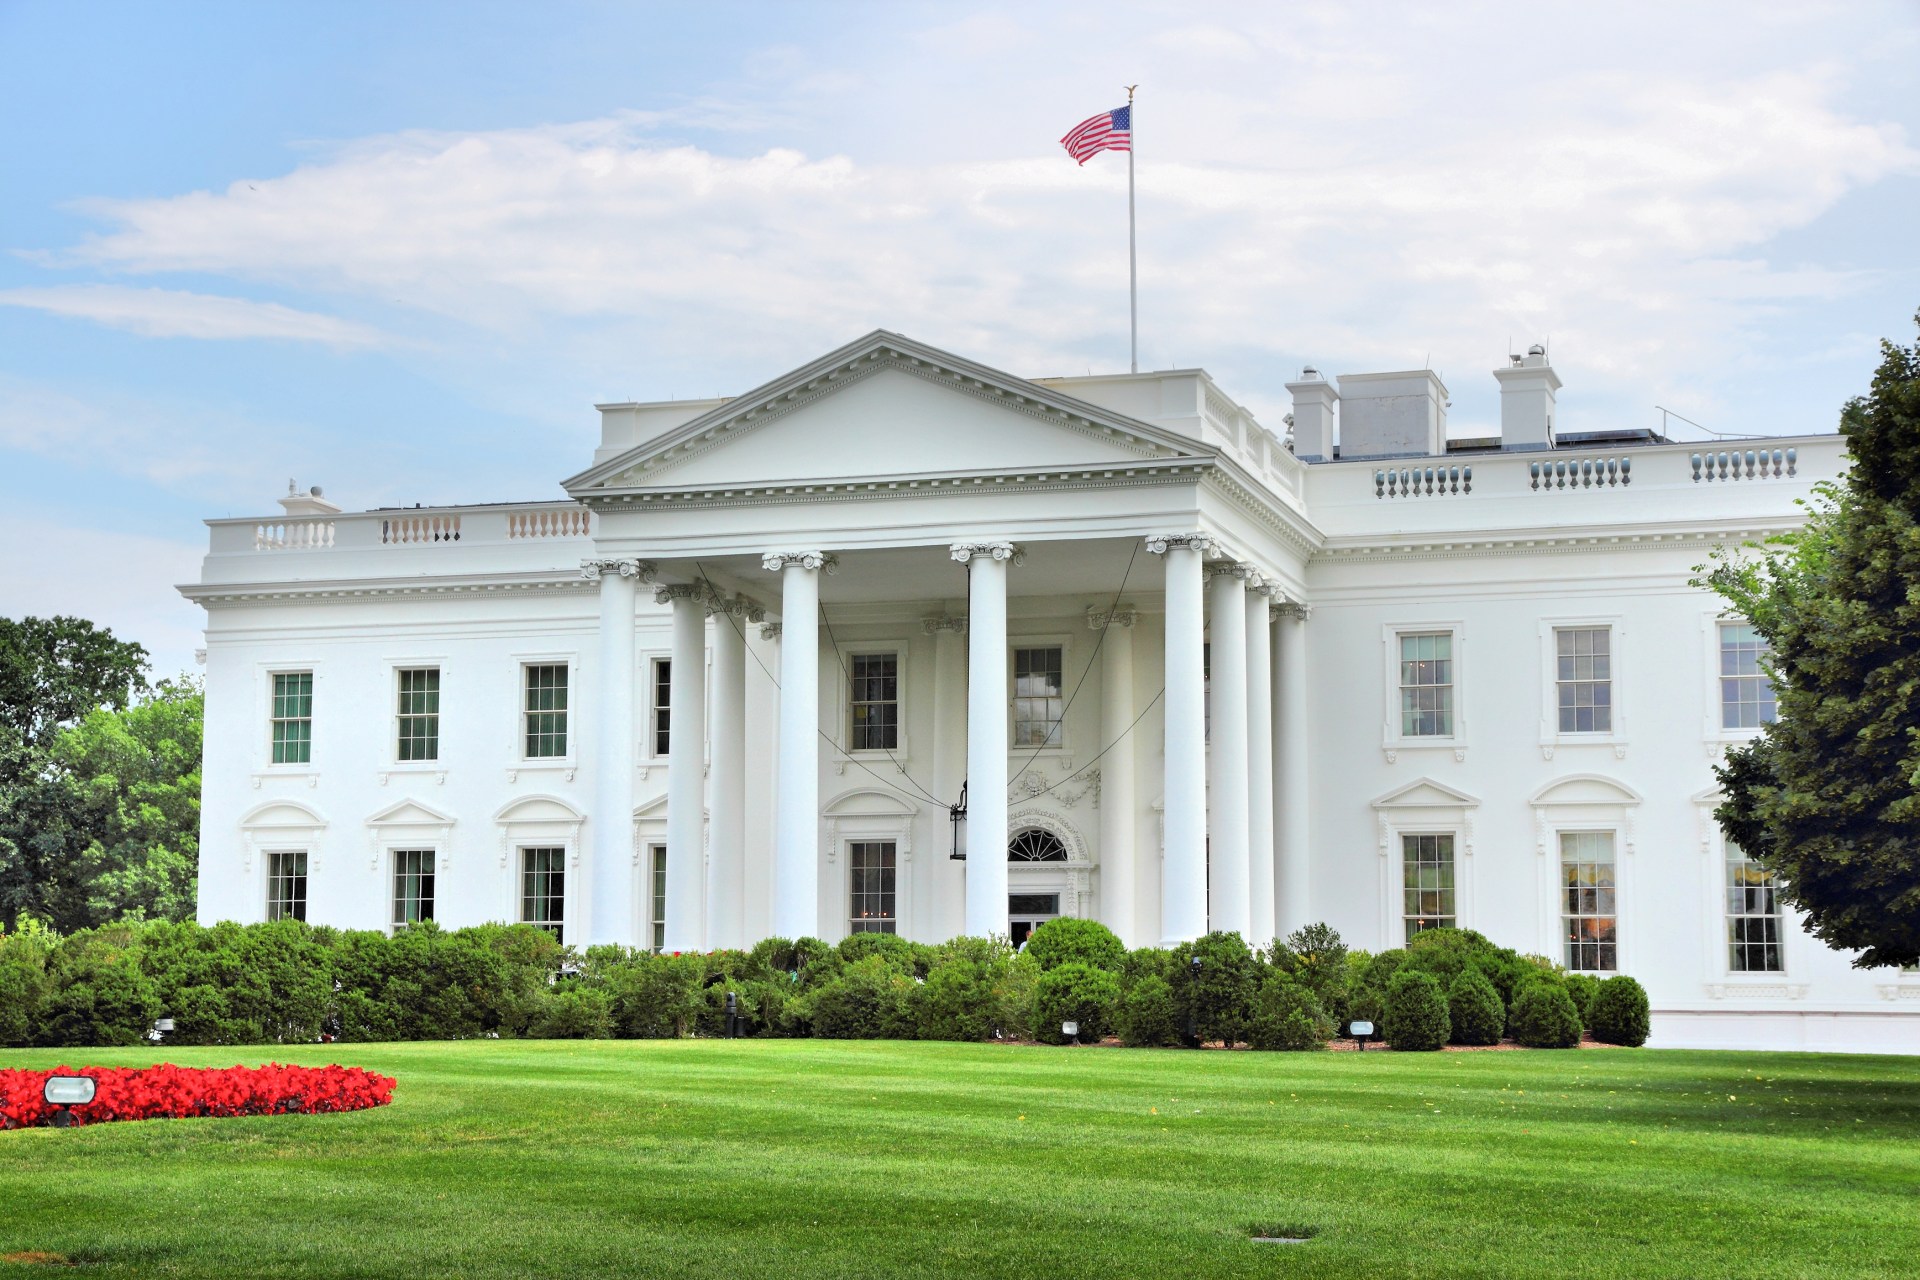 White House Tour: Inside President Joe Biden's New Home